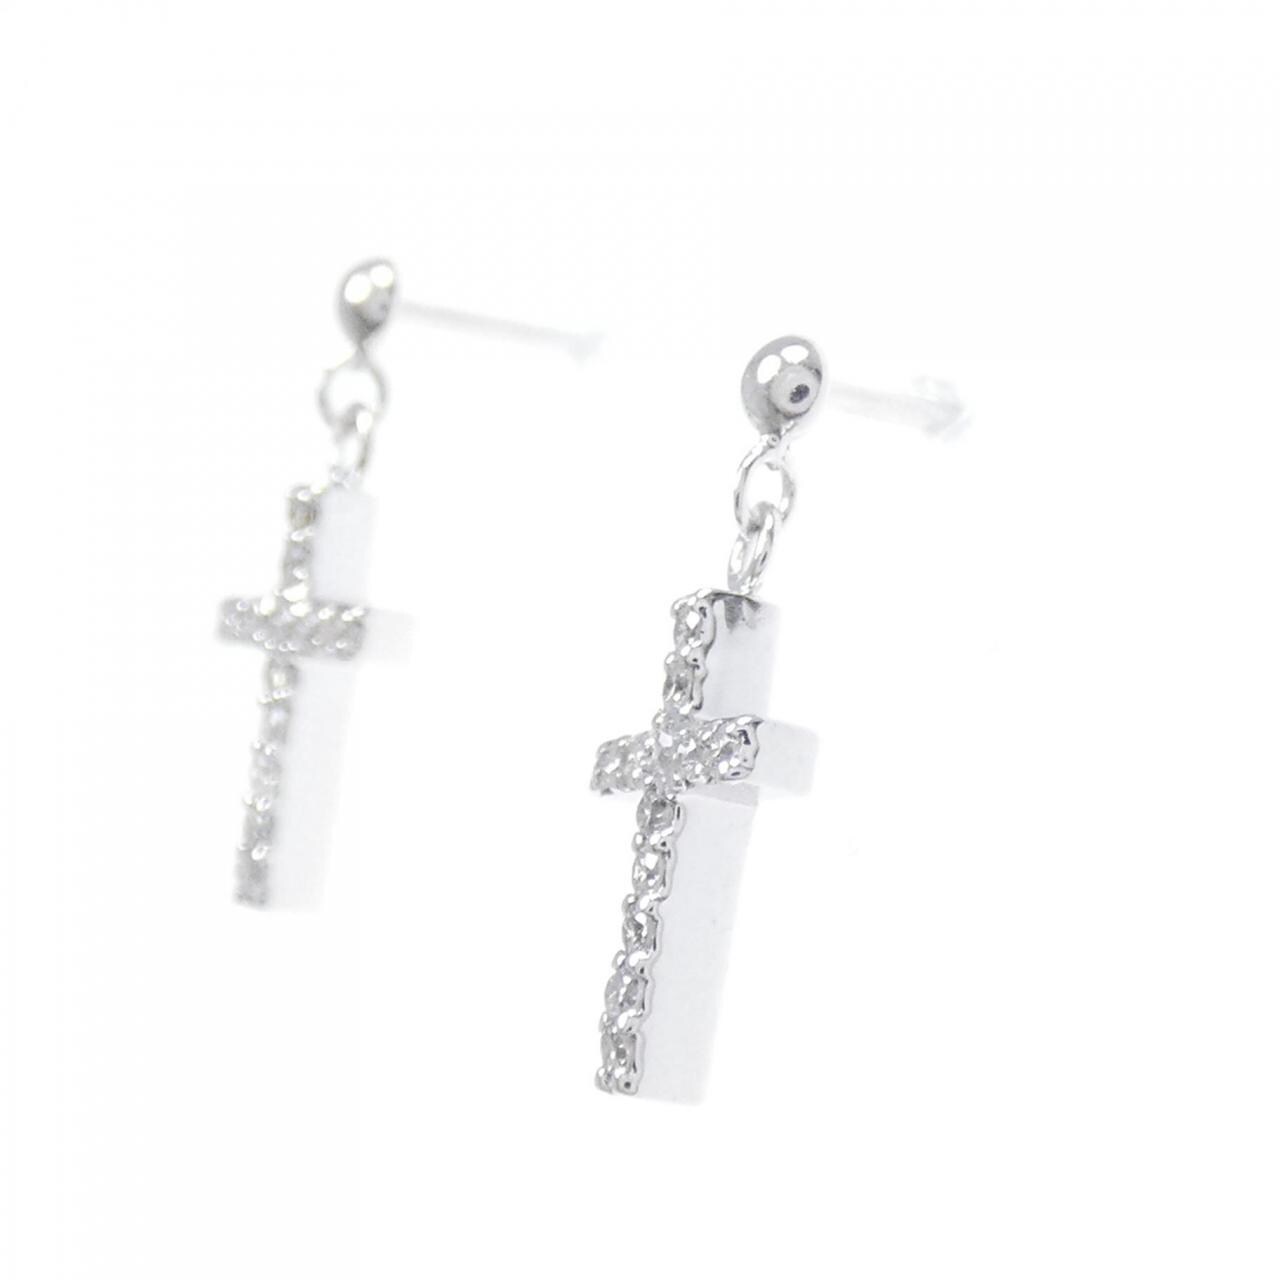 K18WG cross Diamond earrings 0.16CT